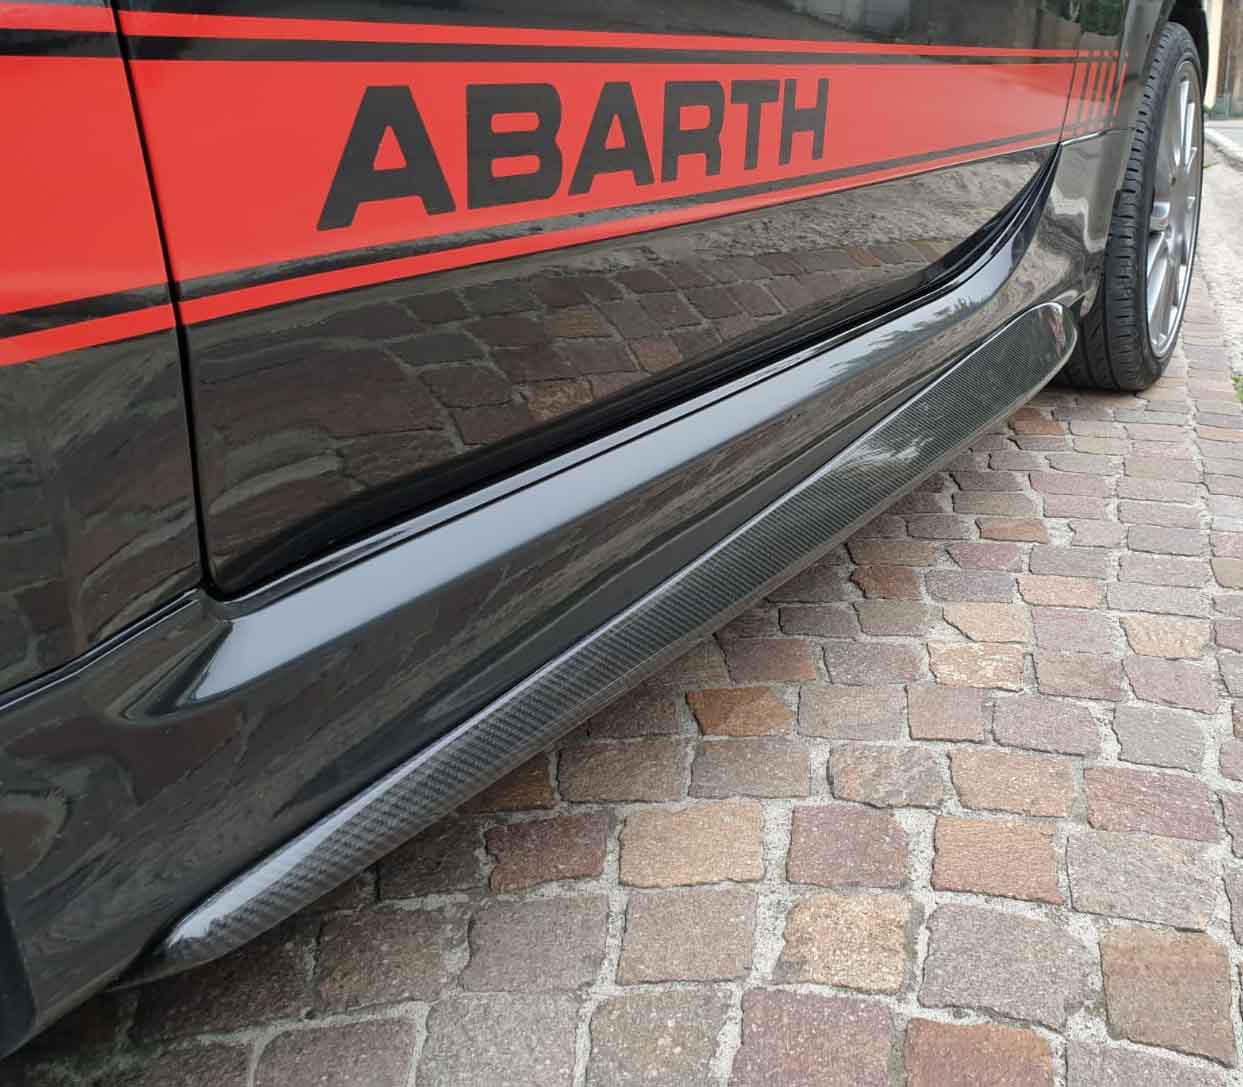 2x 50 cm Aufkleber für Abarth für Seitenschweller – gestickert